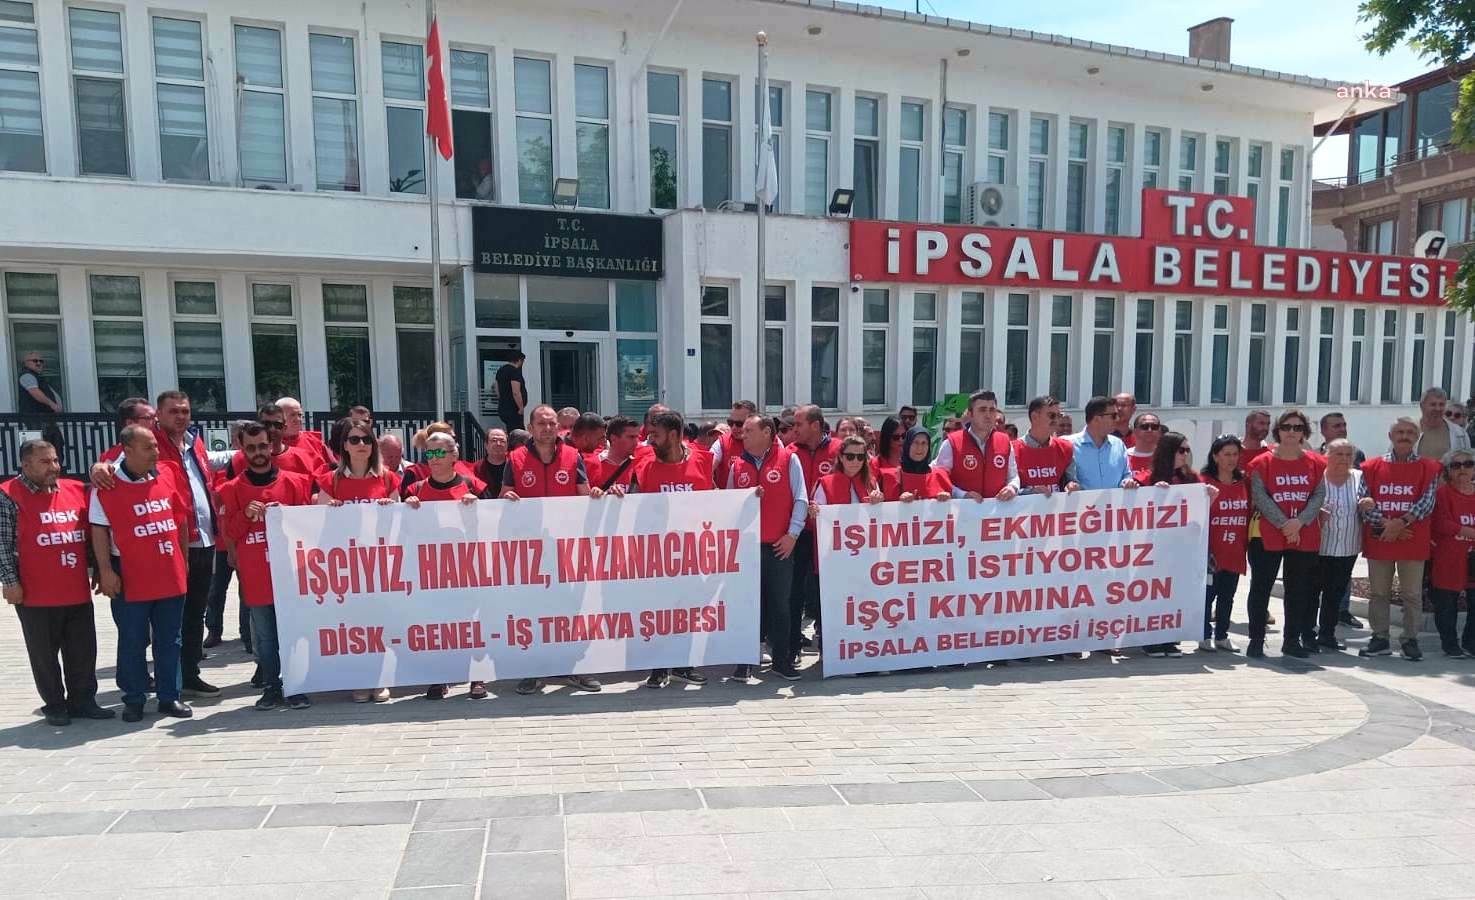 DİSK Genel iş, AKP’li İpsala Belediyesi’nin 58 işçiyi işten çıkarmasını protesto etti